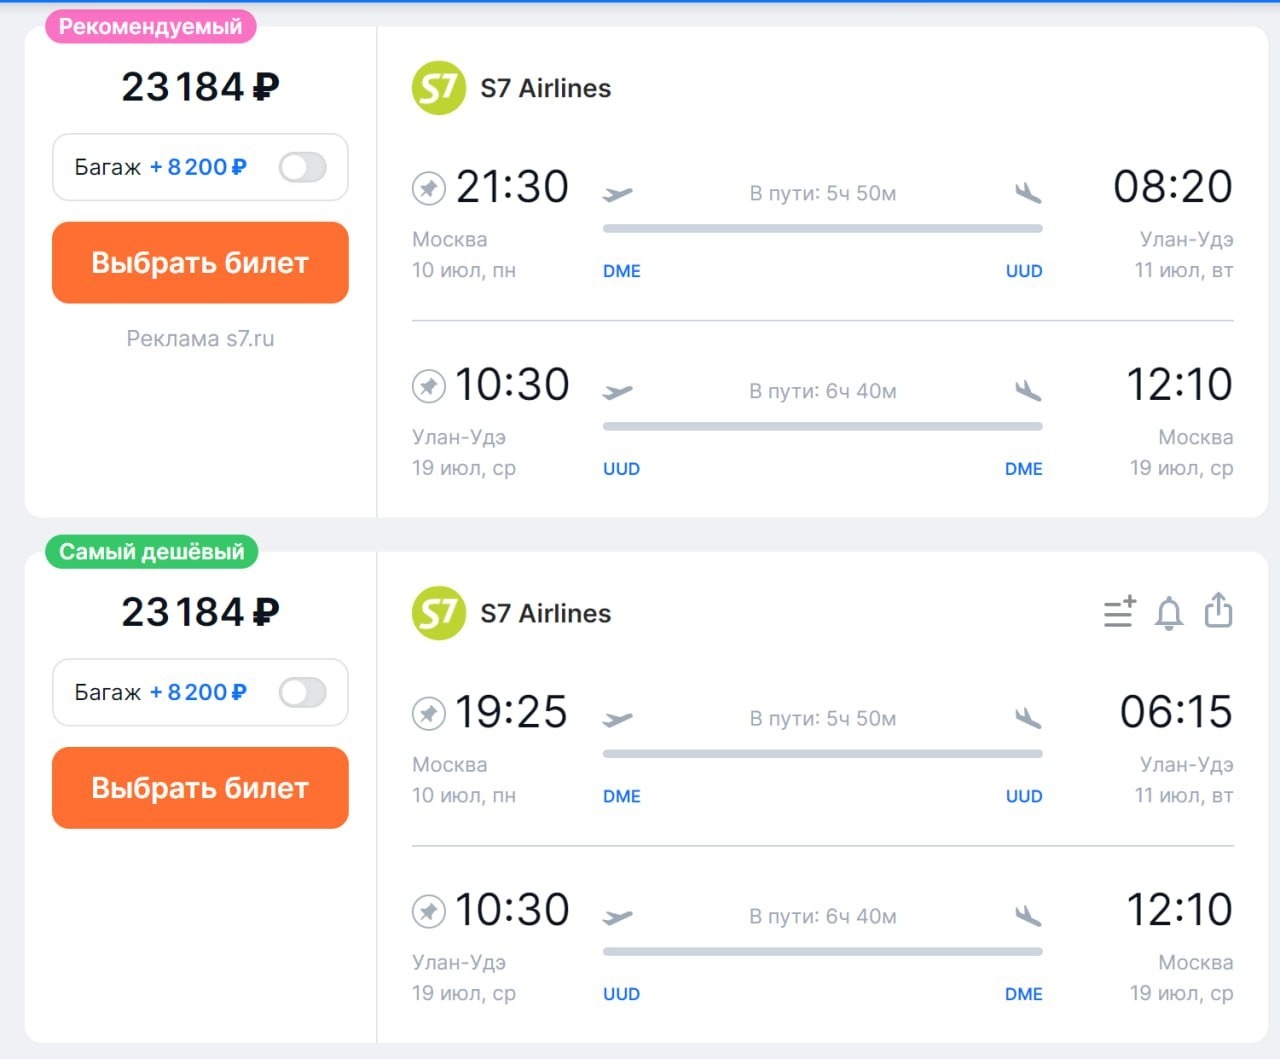 Стоимость билета на самолёт из Москвы в Улан-Удэ и обратно - 23184 руб 